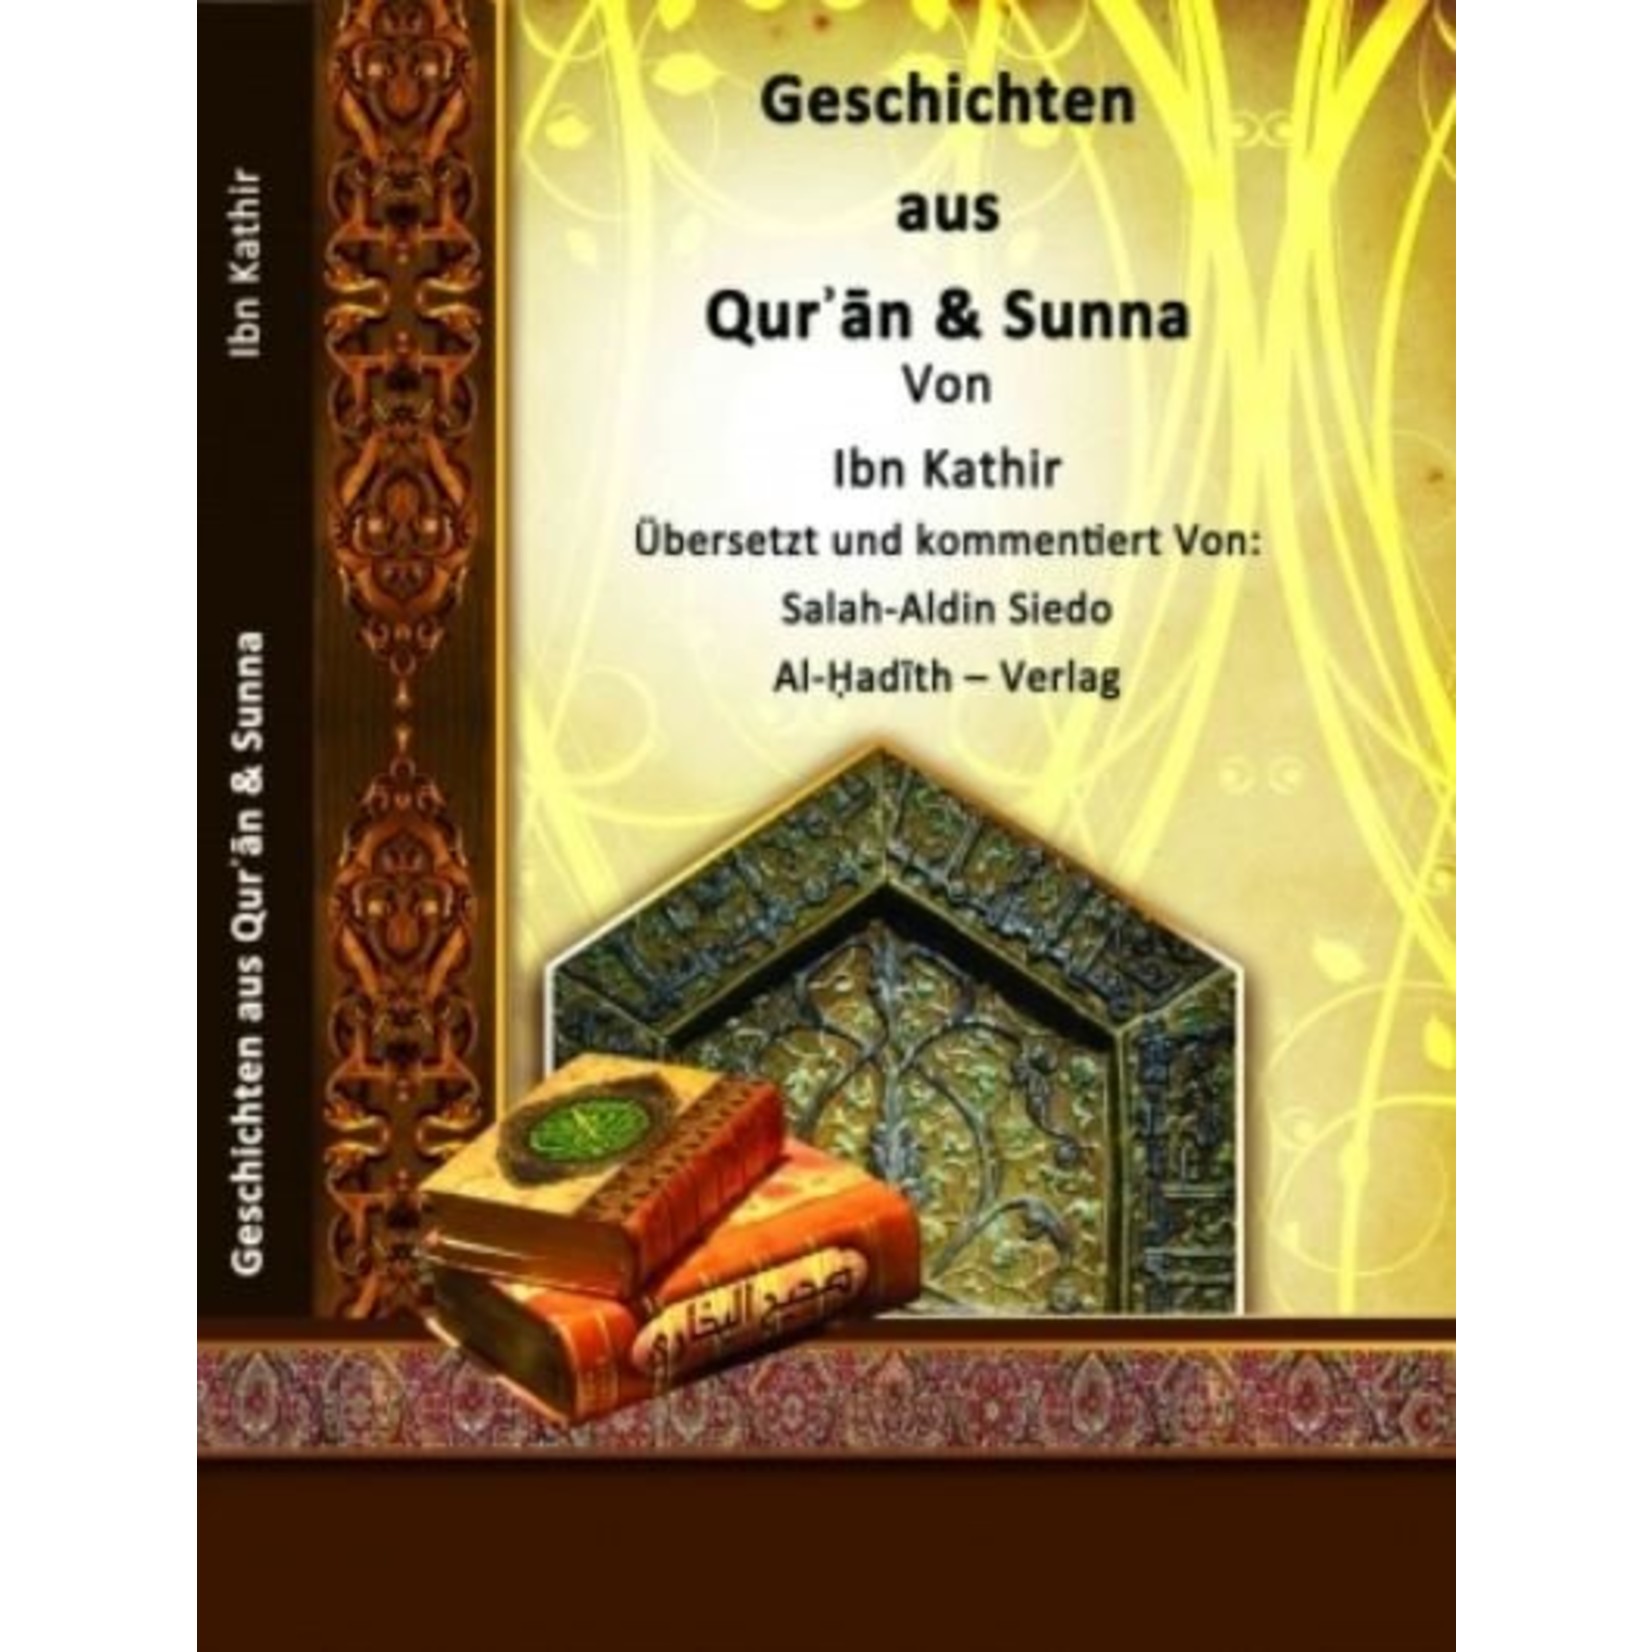 Geschichten aus Qur'an und Sunna